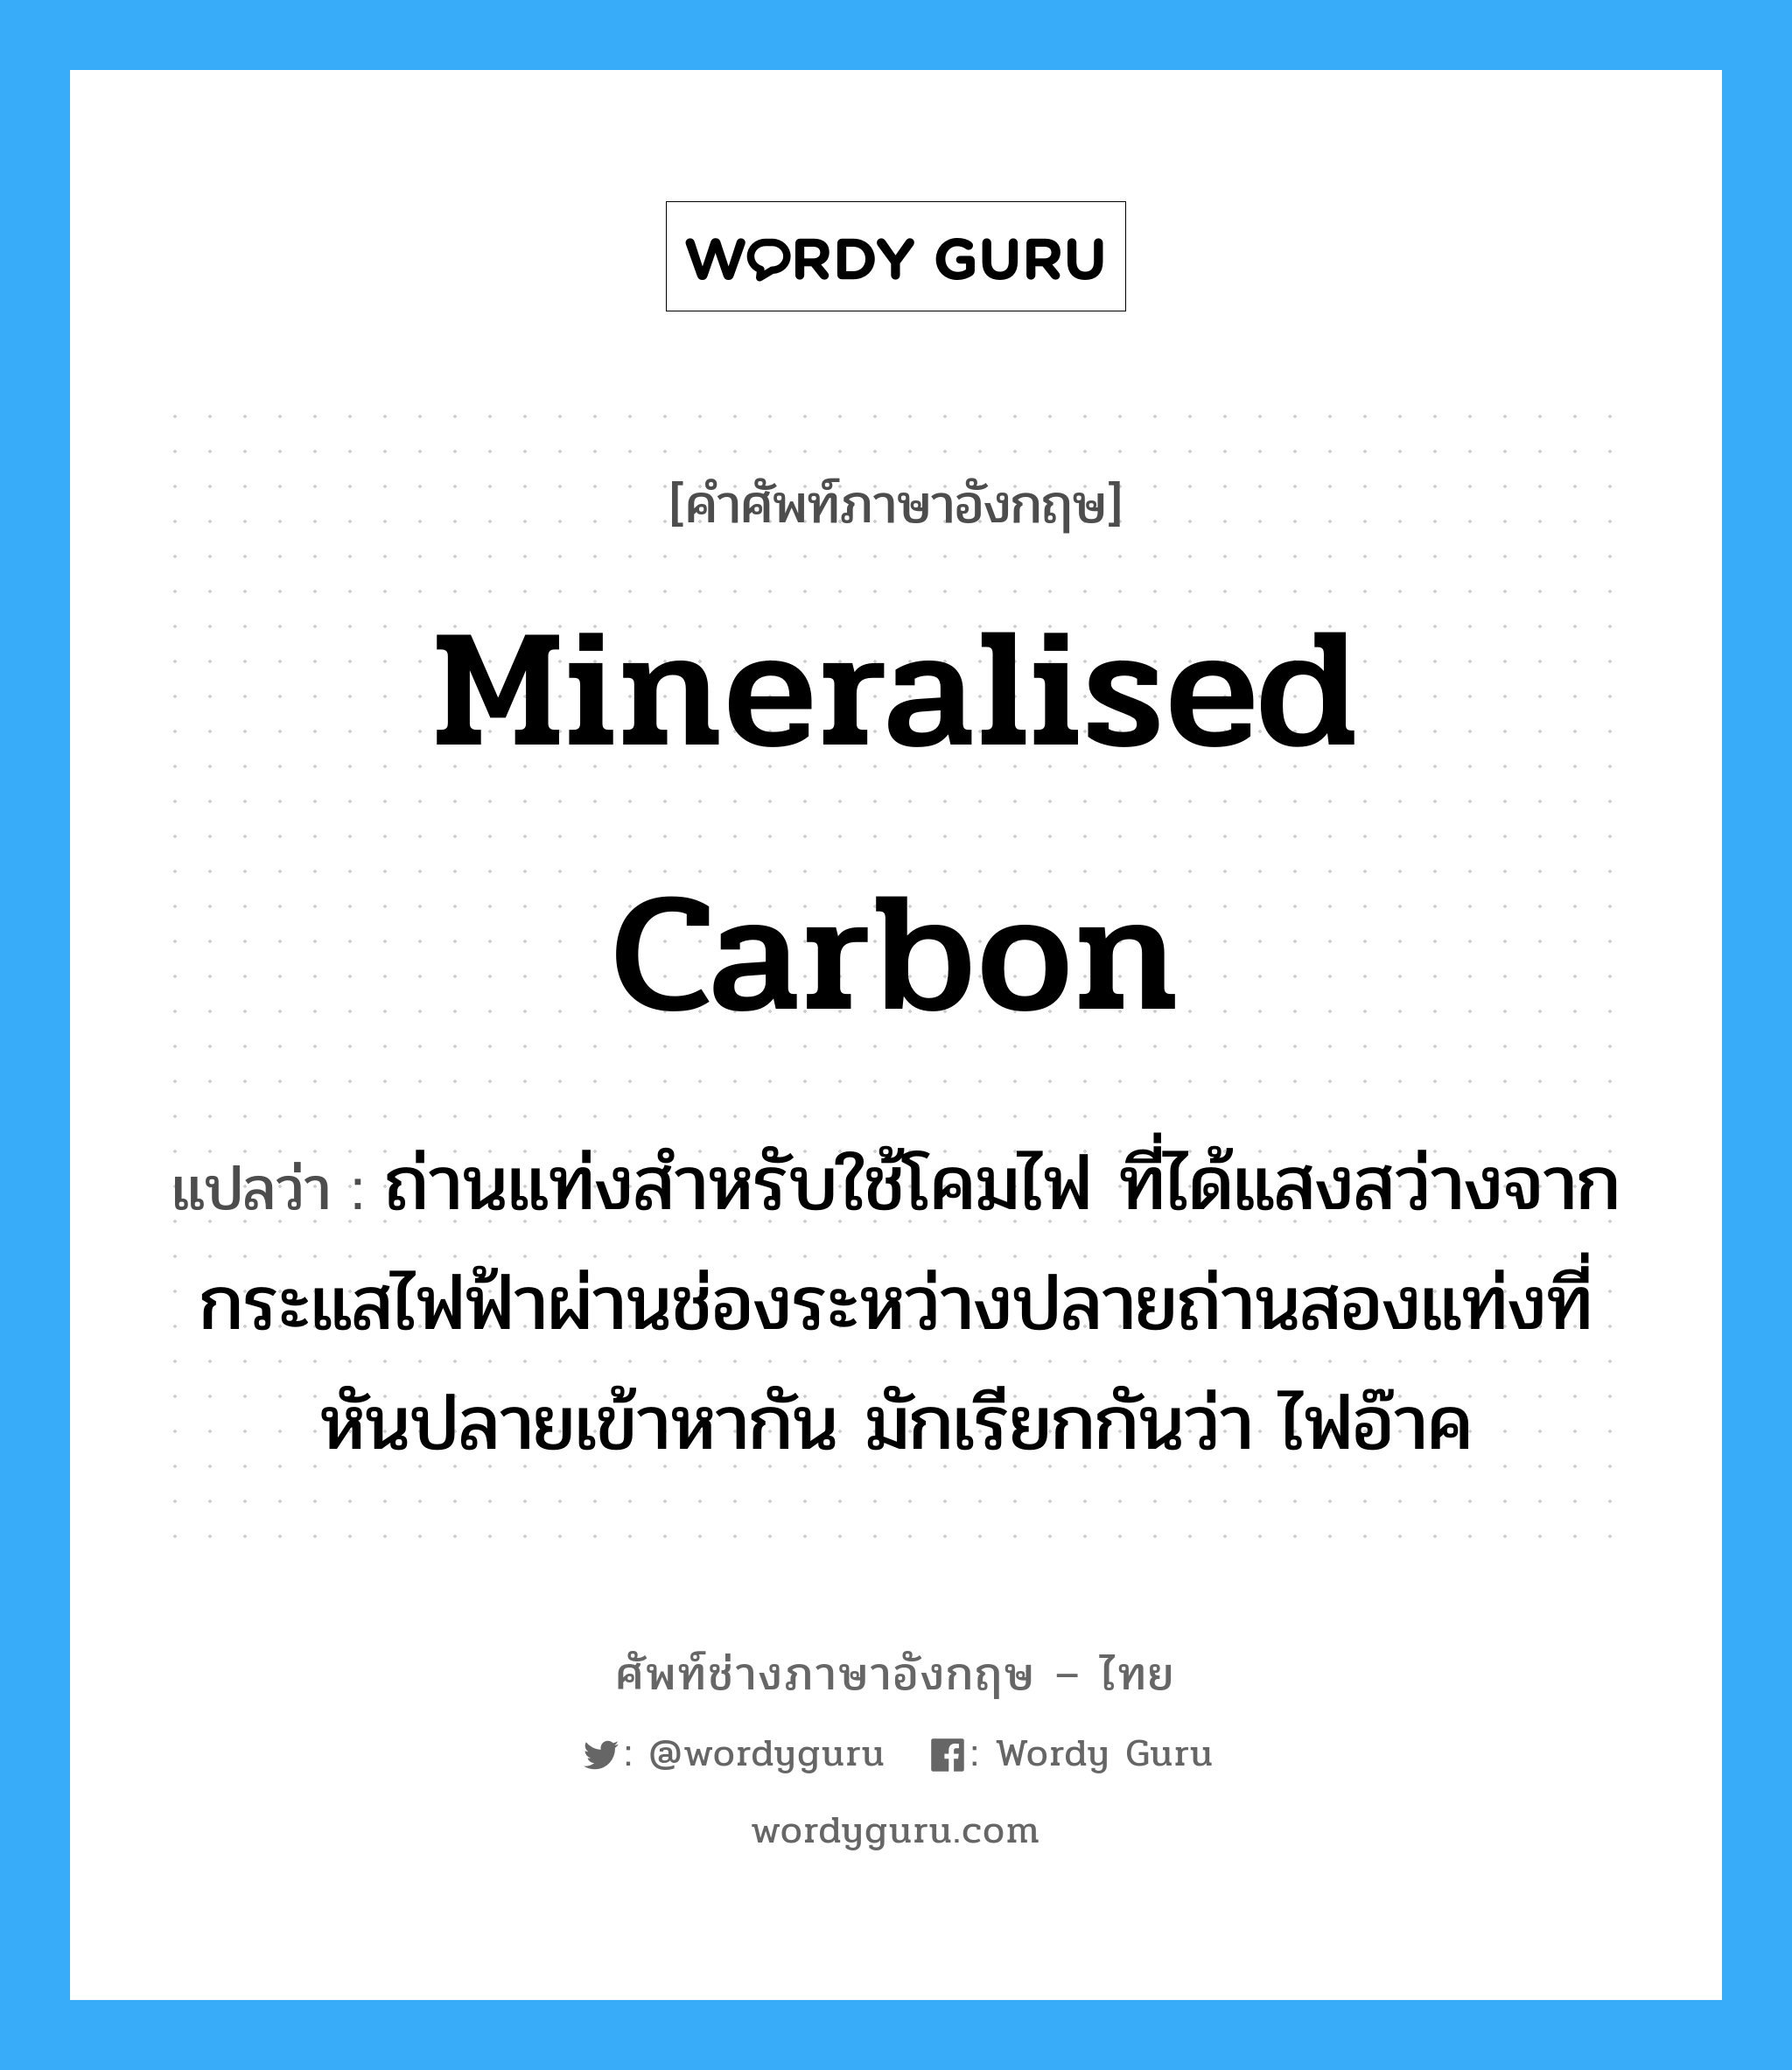 mineralised carbon แปลว่า?, คำศัพท์ช่างภาษาอังกฤษ - ไทย mineralised carbon คำศัพท์ภาษาอังกฤษ mineralised carbon แปลว่า ถ่านแท่งสำหรับใช้โคมไฟ ที่ได้แสงสว่างจากกระแสไฟฟ้าผ่านช่องระหว่างปลายถ่านสองแท่งที่หันปลายเข้าหากัน มักเรียกกันว่า ไฟอ๊าค